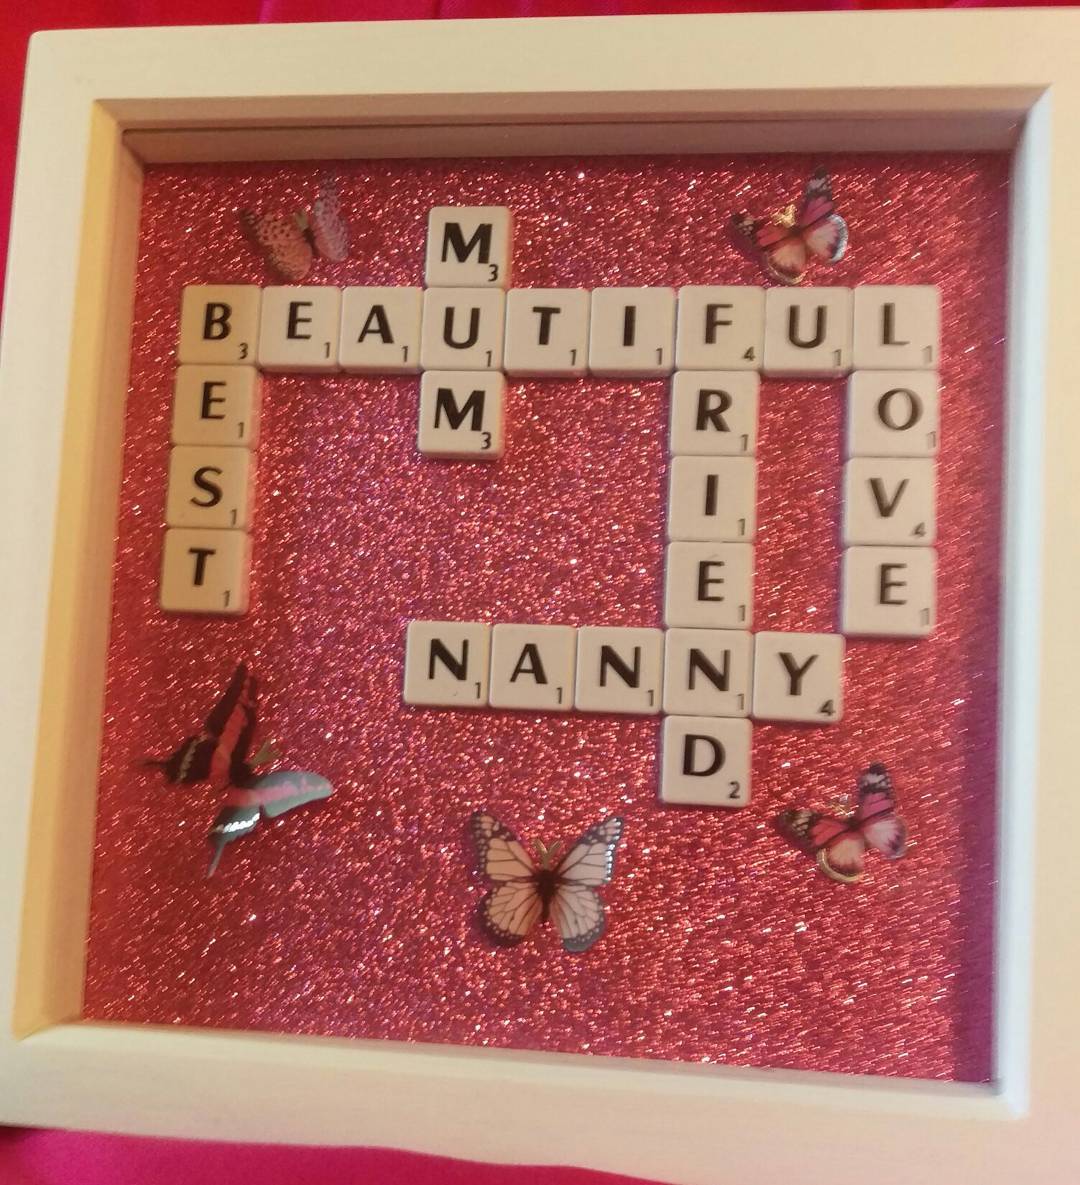 #mumframe #butterfly #scrabble #tiles #pink #love #mothersdaygifts #beautiful #best #friend